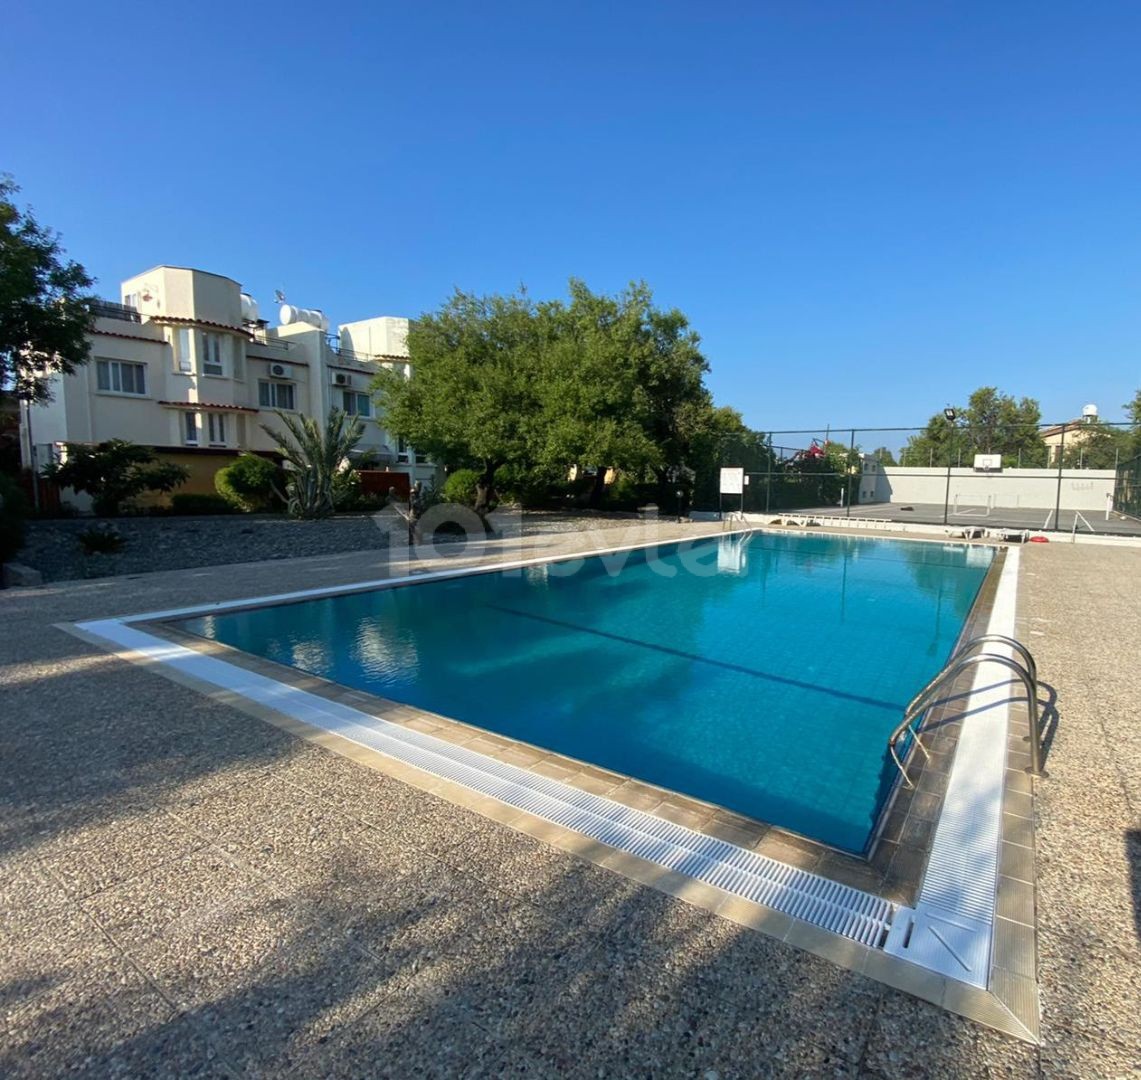 Посуточная аренда виллы в Кирении 3+1 с бассейном, теннисной и баскетбольной площадкой, в 200 метрах от моря.